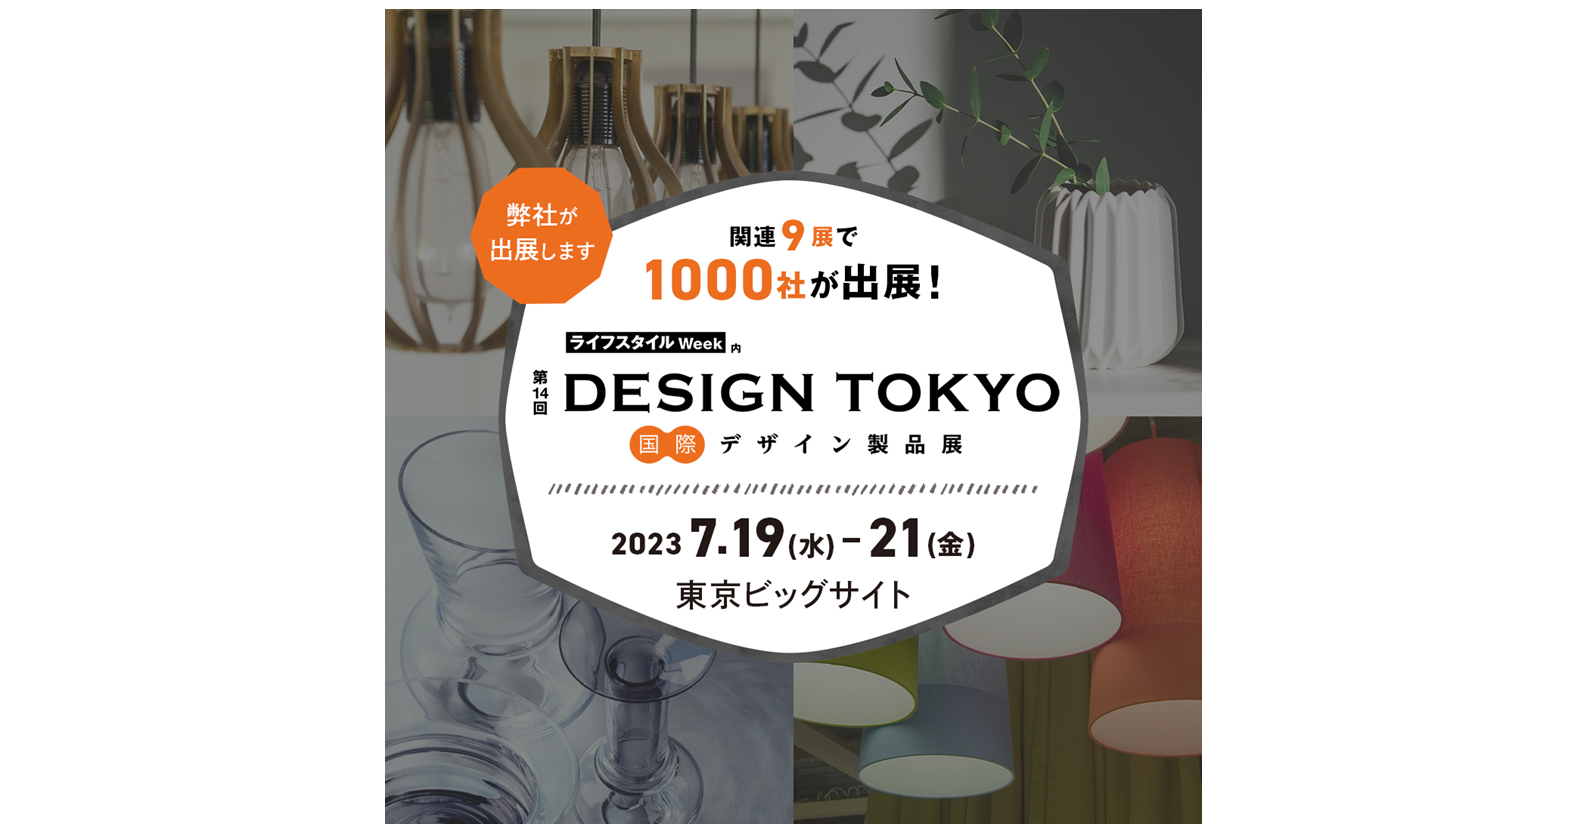 2023年7月19日（水）より東京ビッグサイトにて開催される大規模商談展「第14回 DESIGN TOKYO -国際デザイン製品展」へ音響メタマテリアル技術を応用した吸音材「iwasemi」を出展します